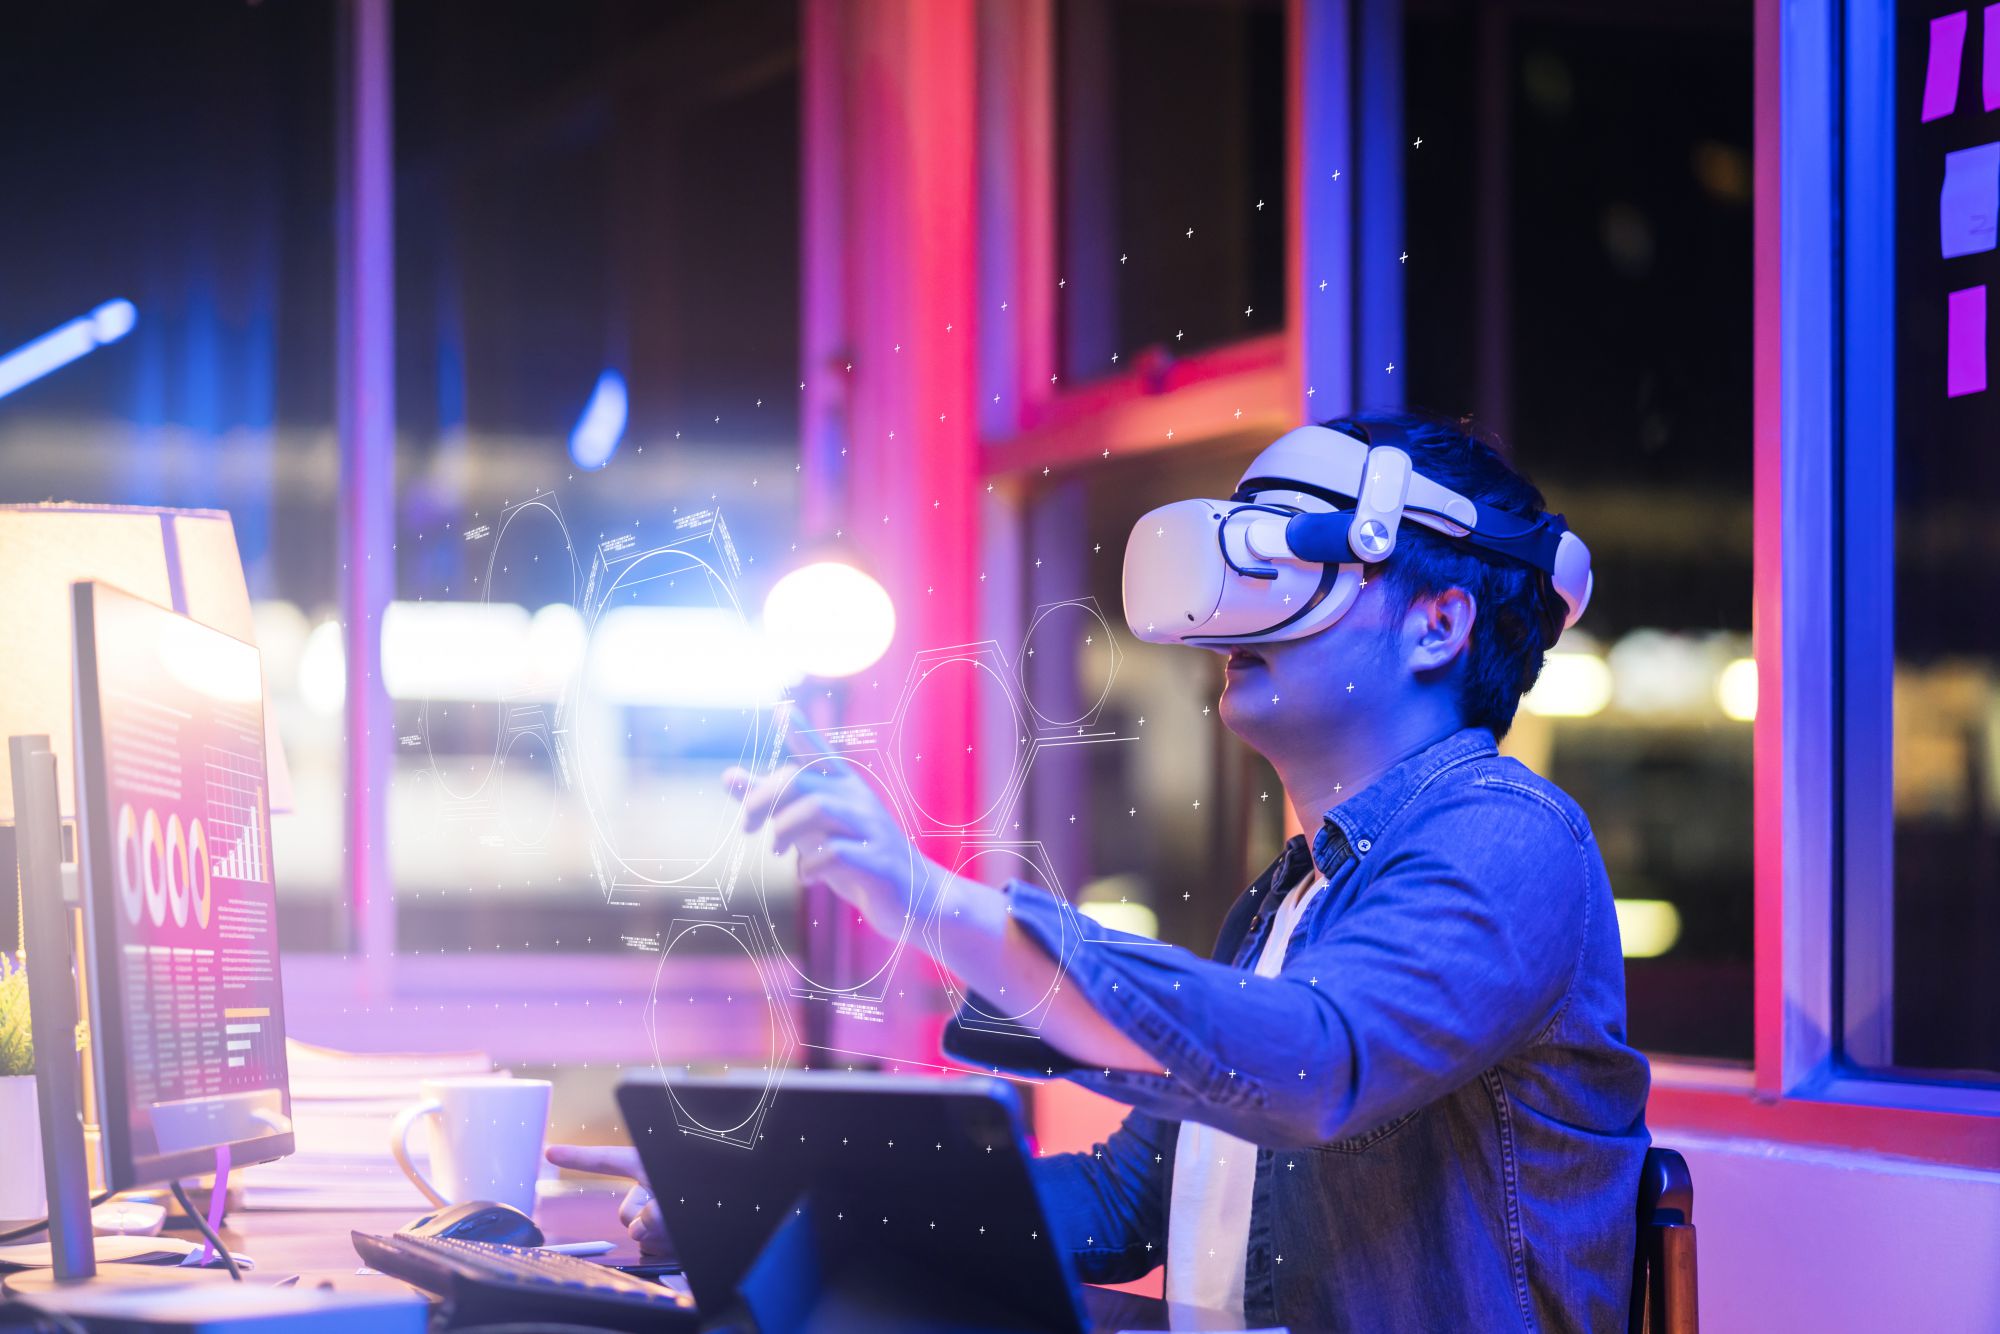 La realidad aumentada y realidad virtual pueden mejorar la eficiencia y reducir costos en las empresas